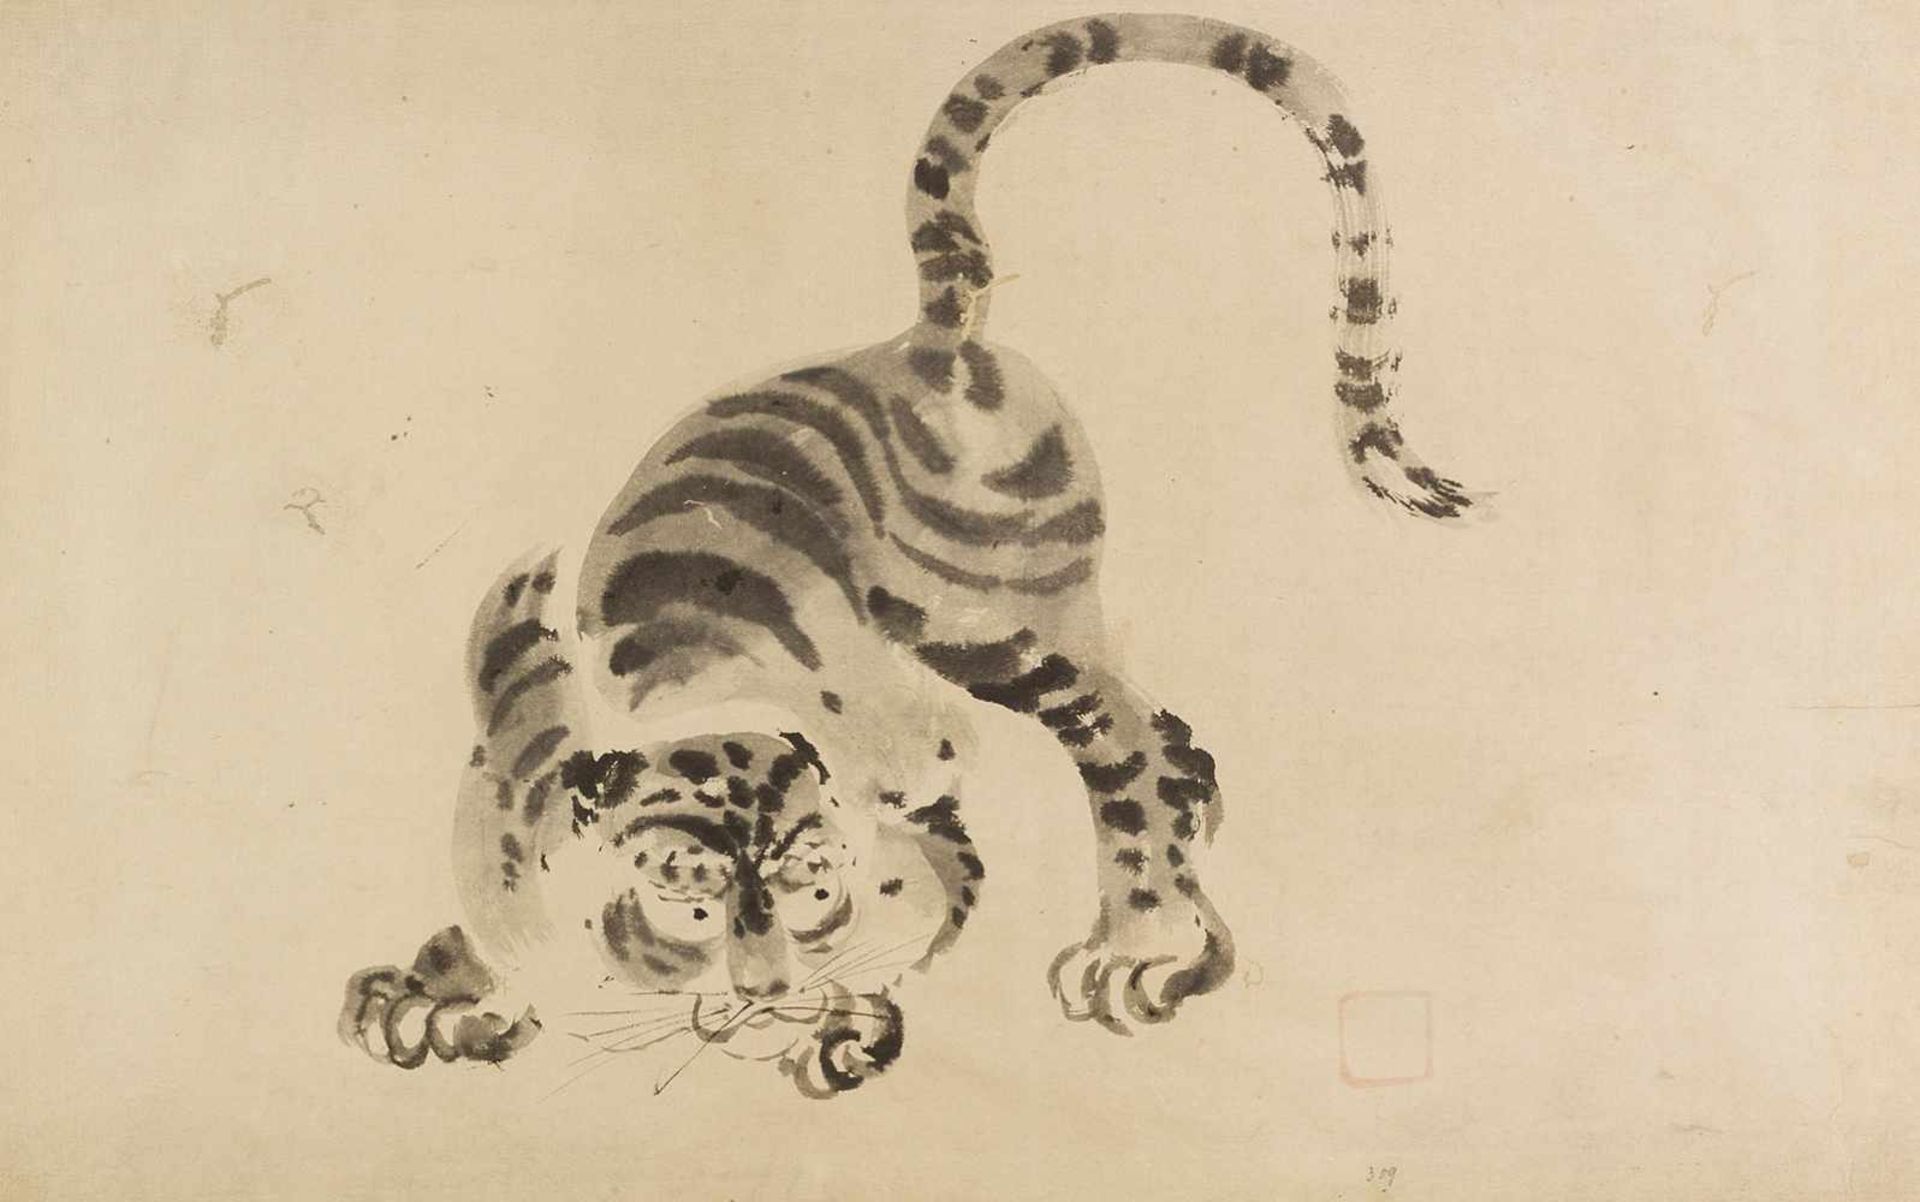 China. – Tiger in geduckter Haltung.Zeichnung, Tuschpinsel. Ch’ing, eventl. nach älterem Vorbild